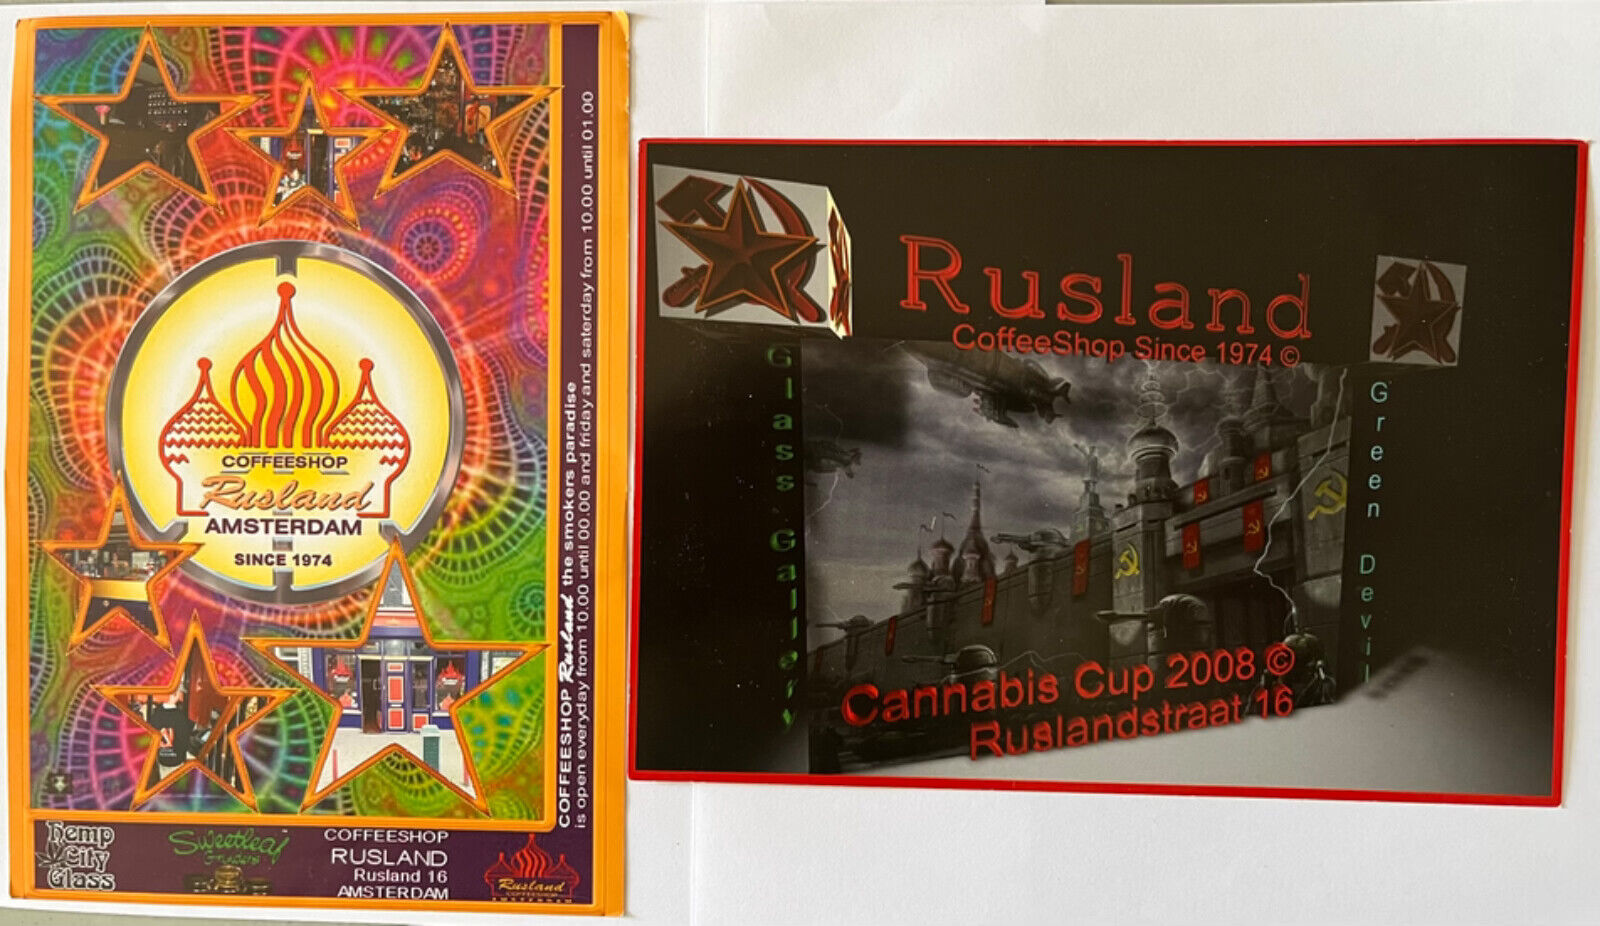 Rusland Coffeeshop 5 leaflets Amsterdam vintage marijuana Cannabis Cup cause lot